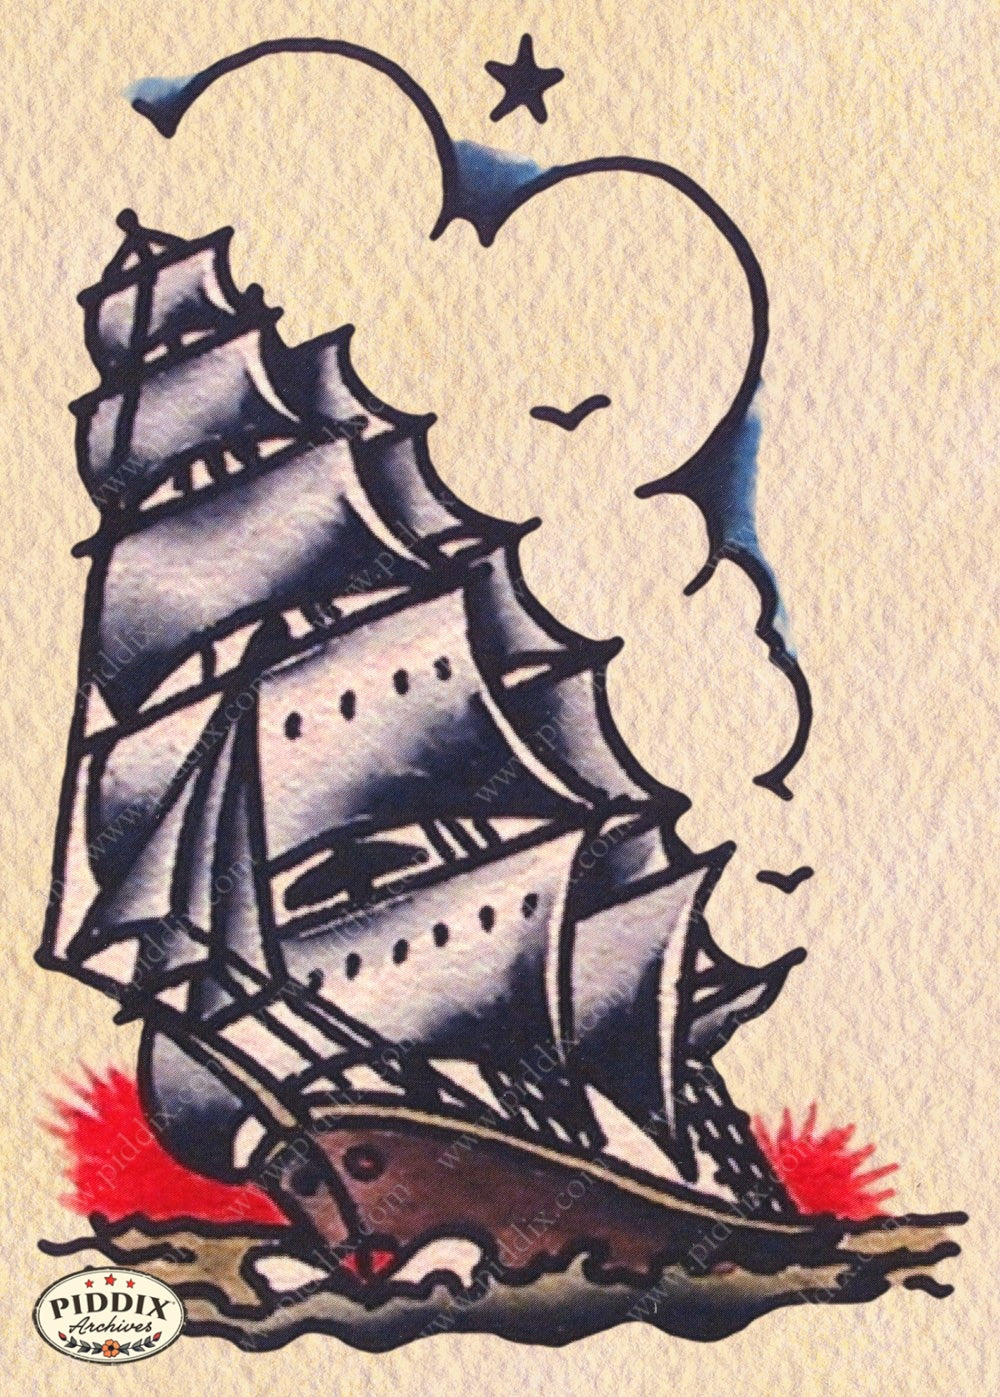 sailor jerry flash ship